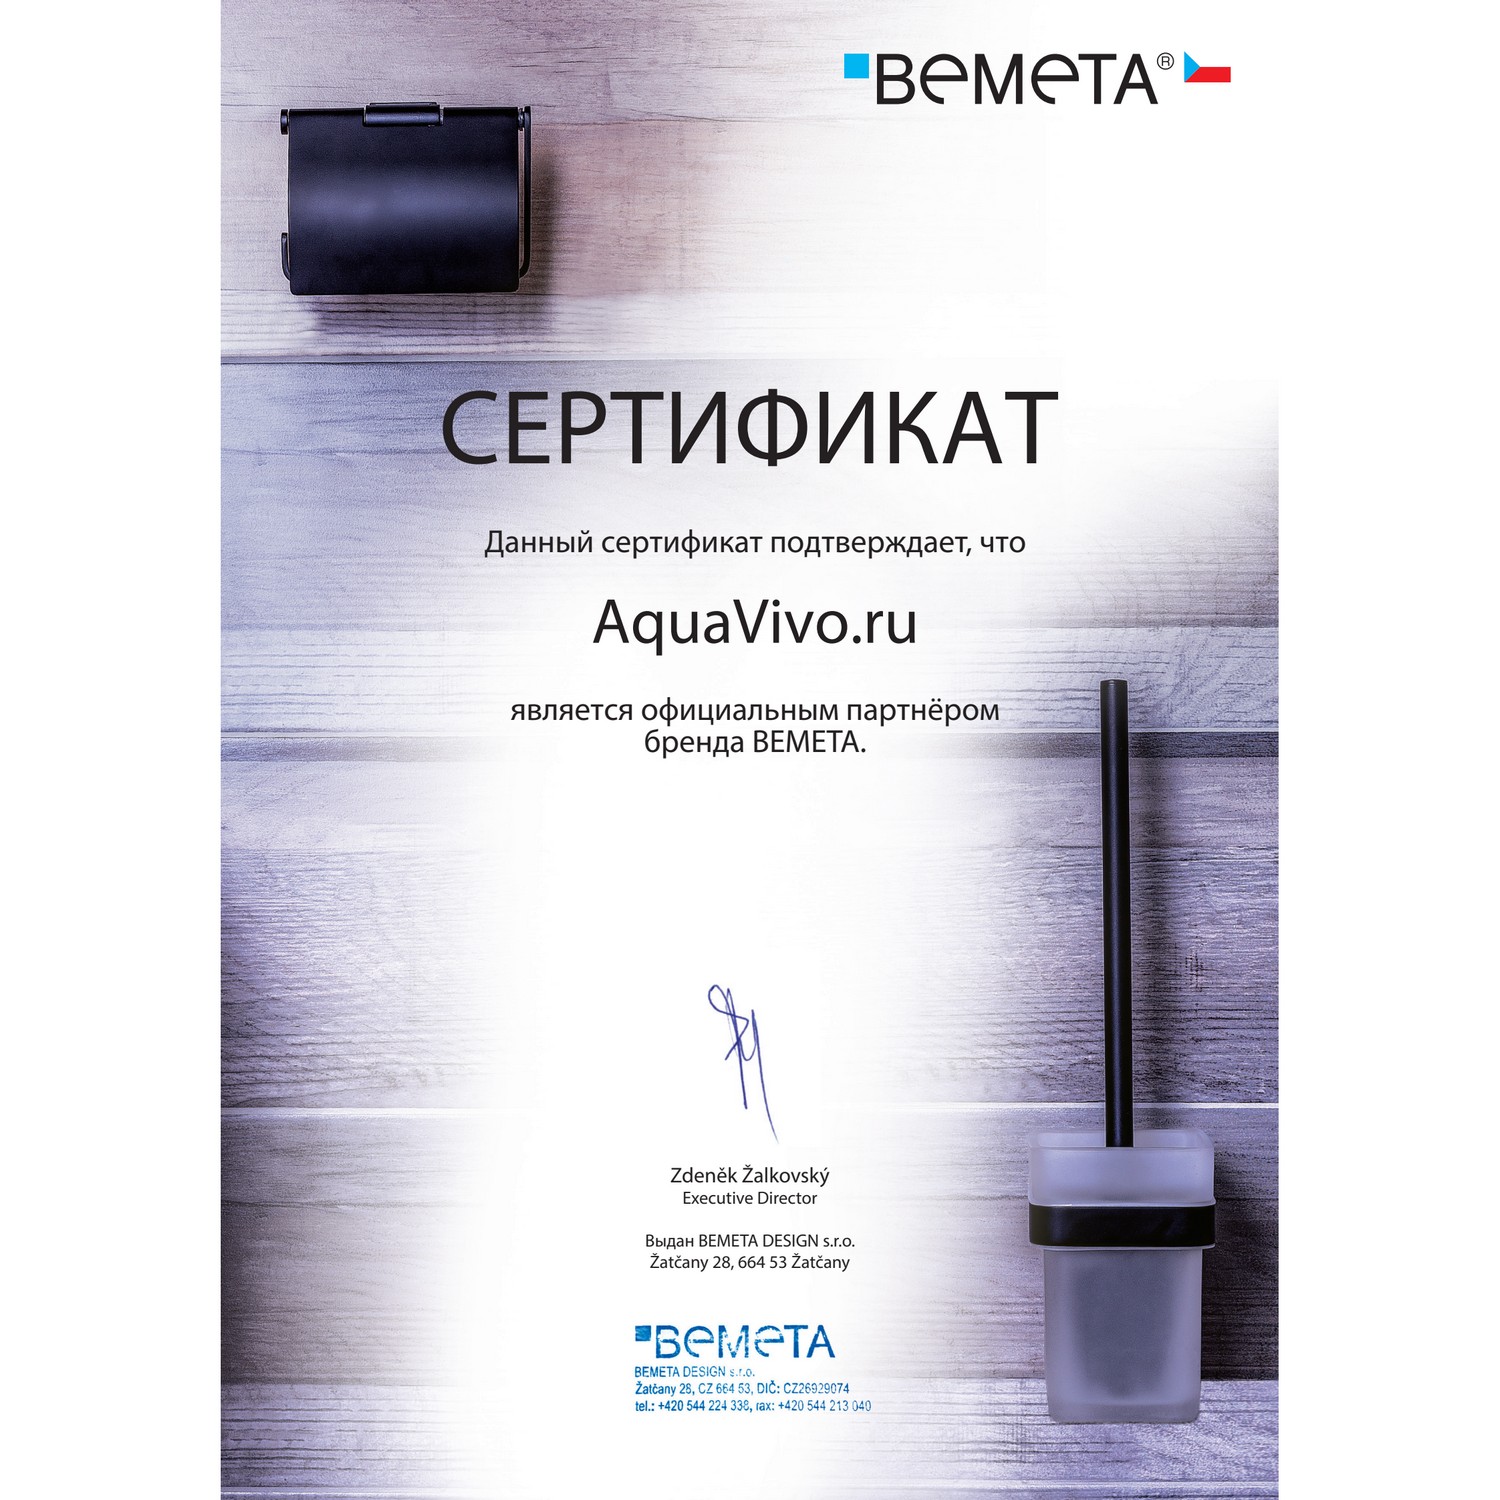 Стакан Bemeta Omega 104110042 двойной, с держателем зубной щетки, настенный - фото 1